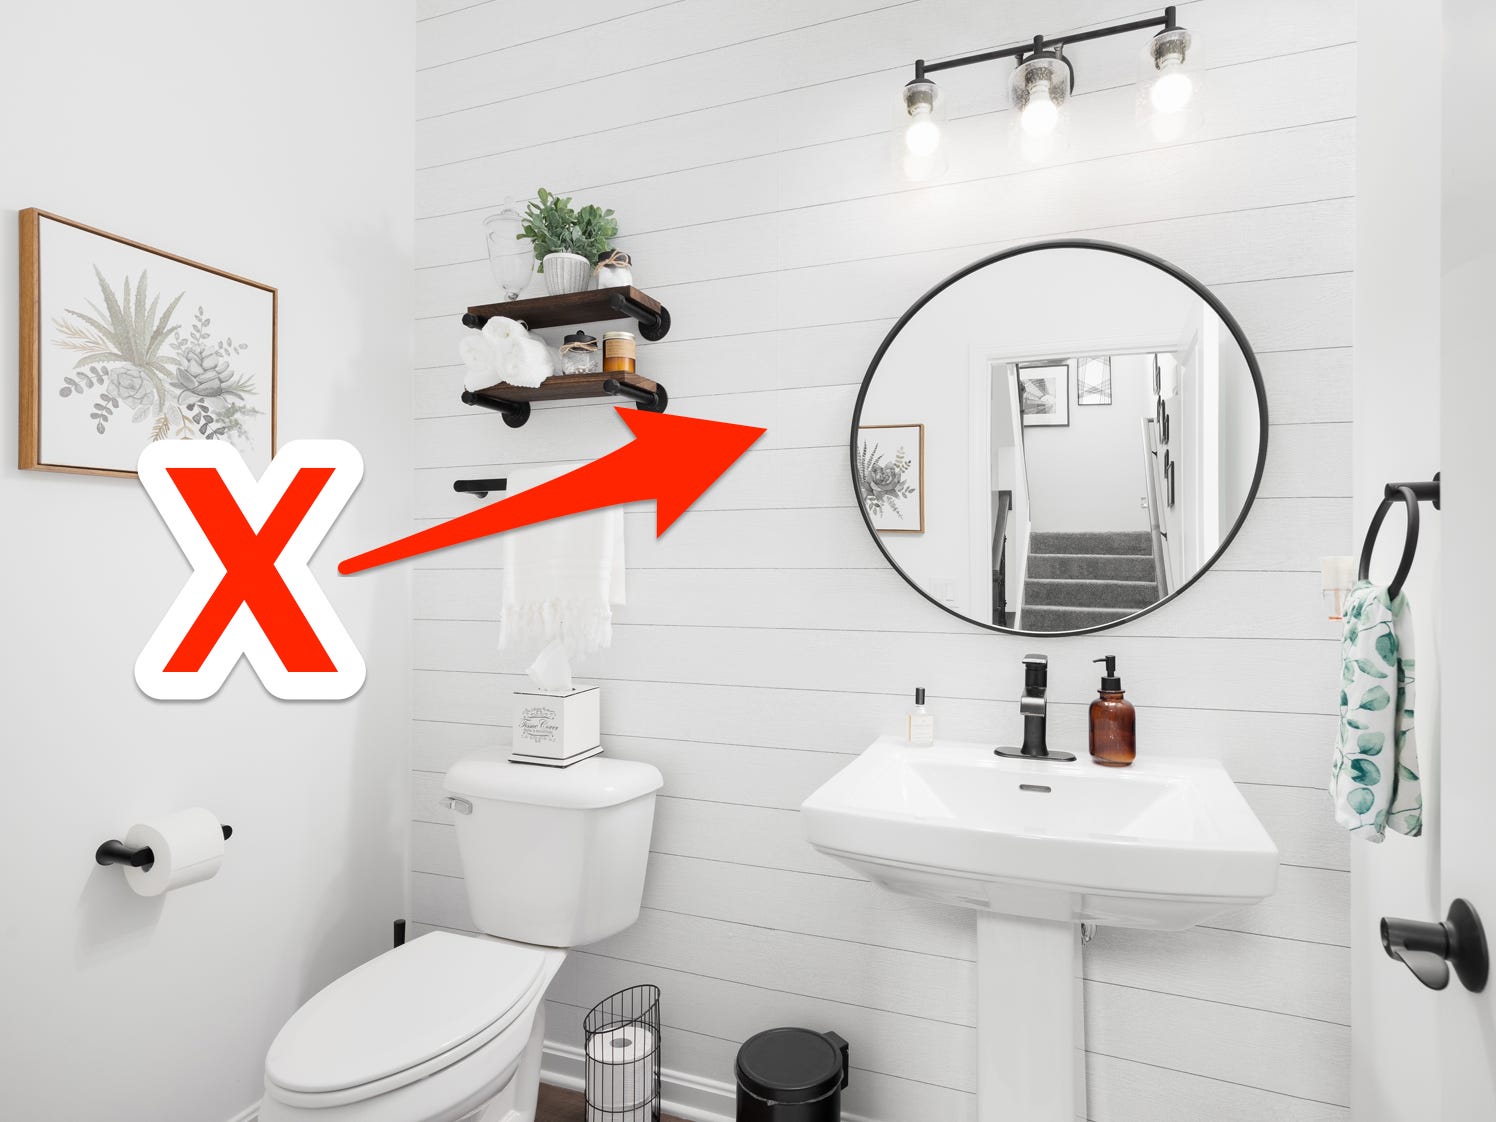 Rotes X und Pfeil, die auf eine Stufenwand in einem komplett weißen Badezimmer mit schwarzen Designelementen zeigen